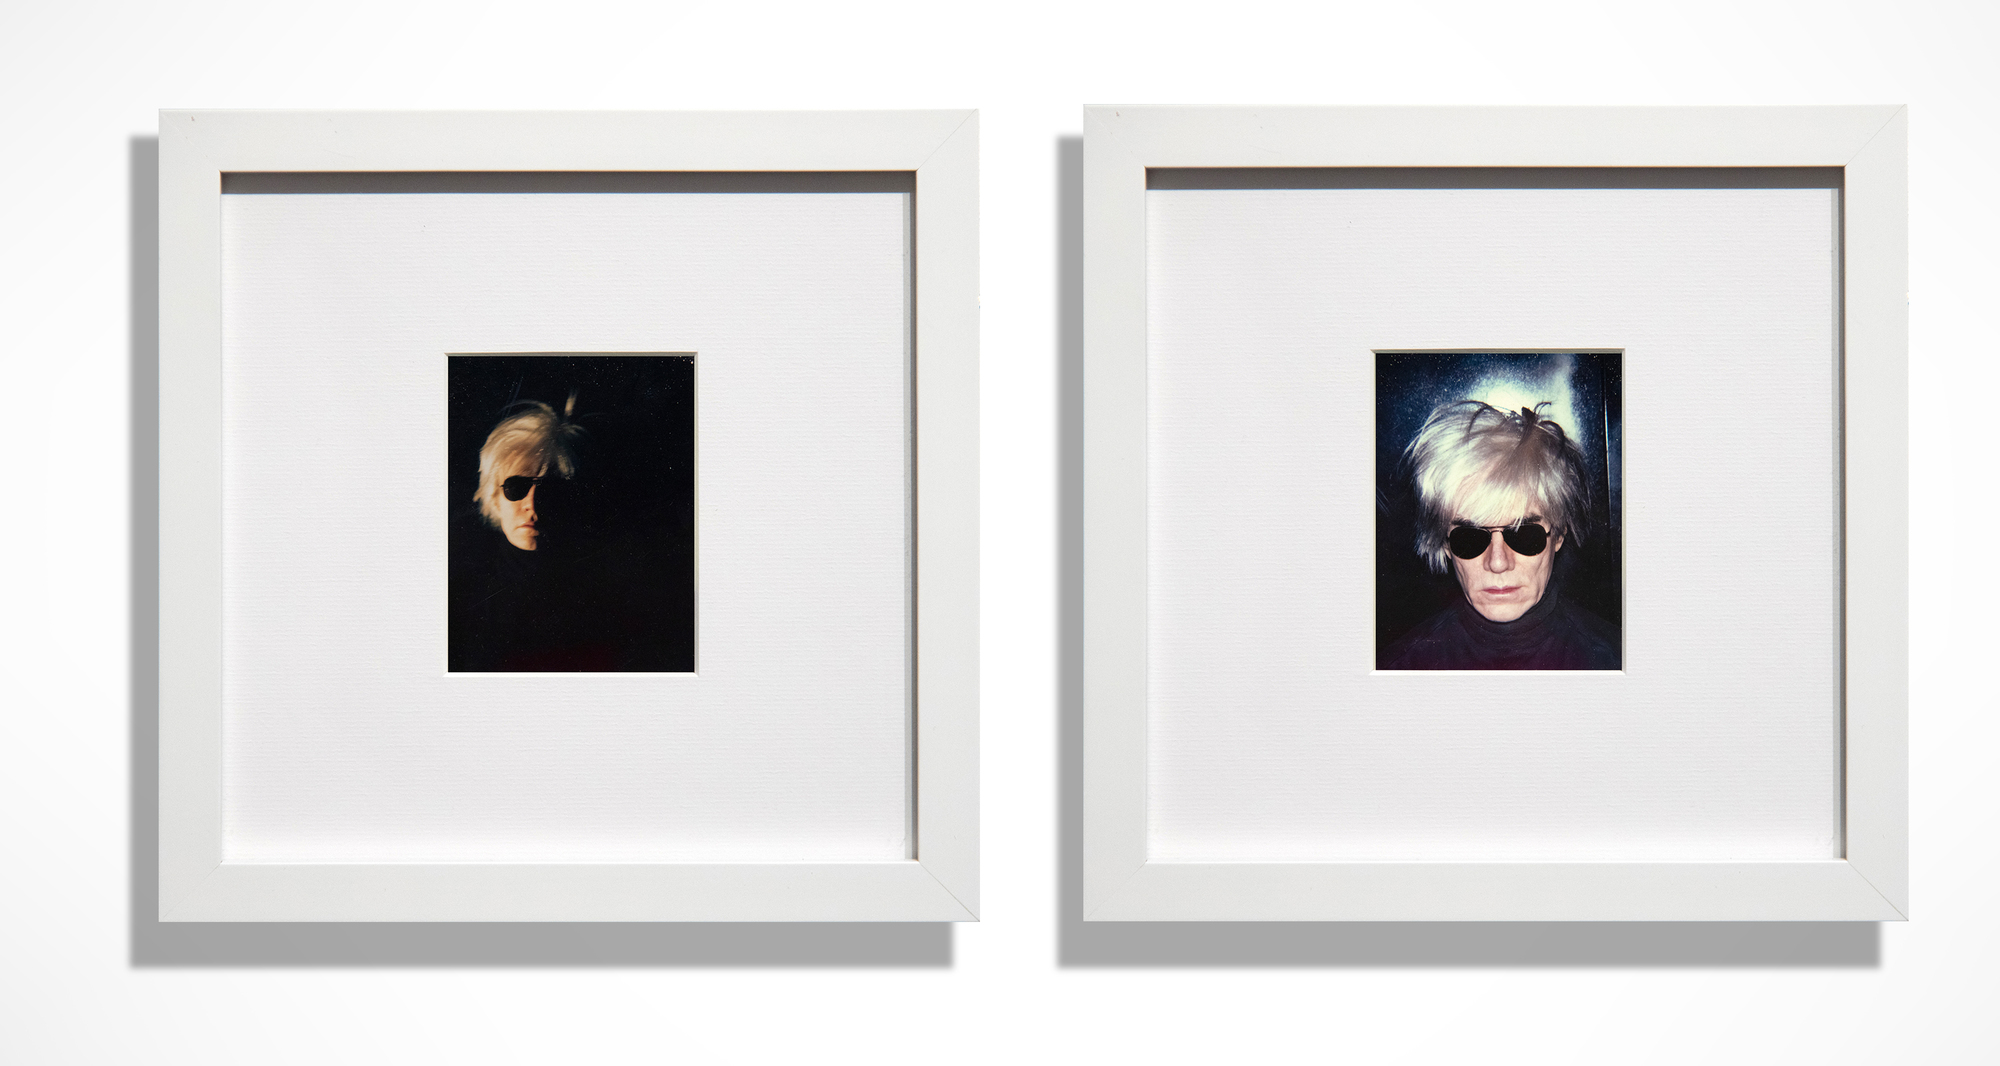 À partir de 1963, avec une sérigraphie dérivée d&#039;une bande de photomaton, Warhol a exploré à plusieurs reprises sa ressemblance, jusqu&#039;à l&#039;image emblématique de la &quot;perruque de la peur&quot;. Essentielle à sa représentation des célébrités et à son autoreprésentation, la photographie Polaroïd a joué un rôle crucial dans son œuvre et dans notre perception de sa contribution massive à l&#039;art d&#039;après-guerre en Amérique. Les deux images présentées, sombres et effrayantes, sont des portraits magnifiquement réalisés et bien mis en scène. Enveloppés dans une ambiance morose qui éviscère son corps, ces autoportraits représentent Andy vêtu de cette perruque emblématique et de lunettes de soleil d&#039;aviateur sombres, sur une toile de fond si profondément ombragée que sa tête semble flotter dans un vide de ténèbres. Warhol aimait les jeux de rôle, et ici, il en a à revendre !